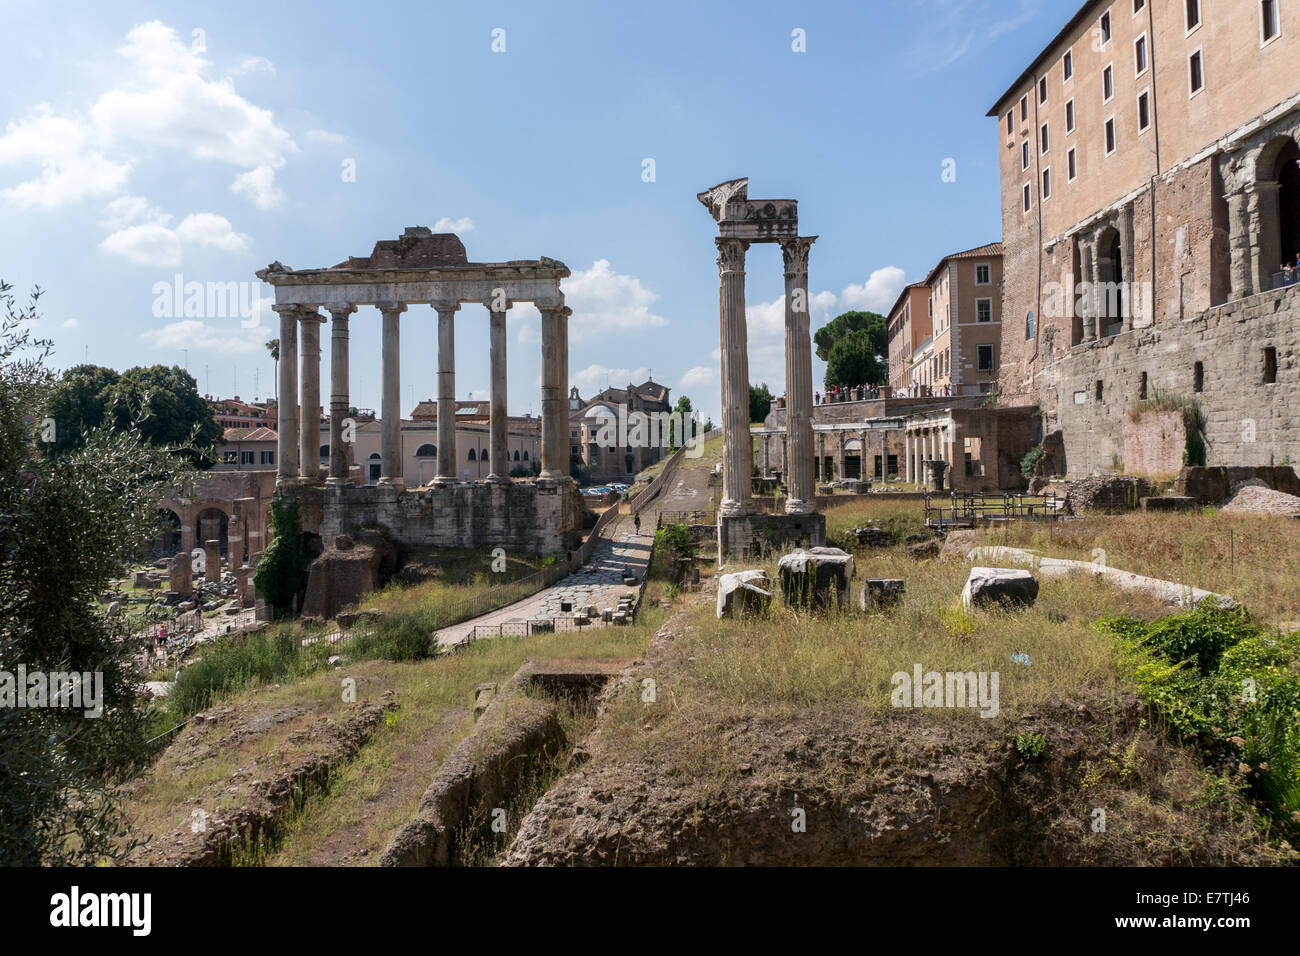 Italie : Ruine de Temple de Saturne et Titus (de gauche à droite) à l'extrémité nord-ouest du Forum Romain. Photo à partir de 6. Septembre 2014. Banque D'Images